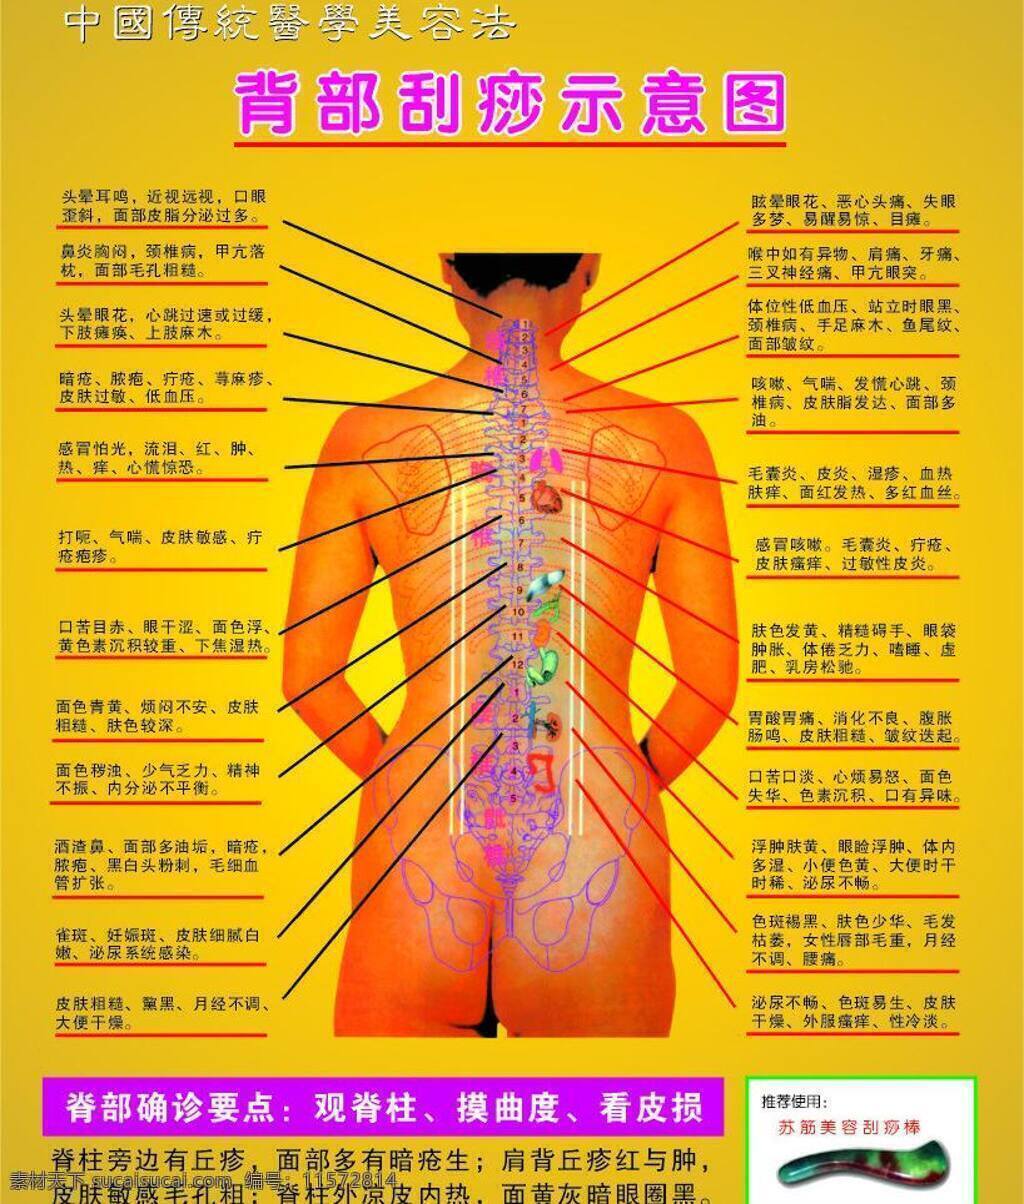 背部 刮痧 示意图 美容 生活百科 医疗保健 刮痧示意图 中国 传统 医学美容 法 对应症状 背部确诊要点 苏 筋 棒 矢量 海报 其他海报设计